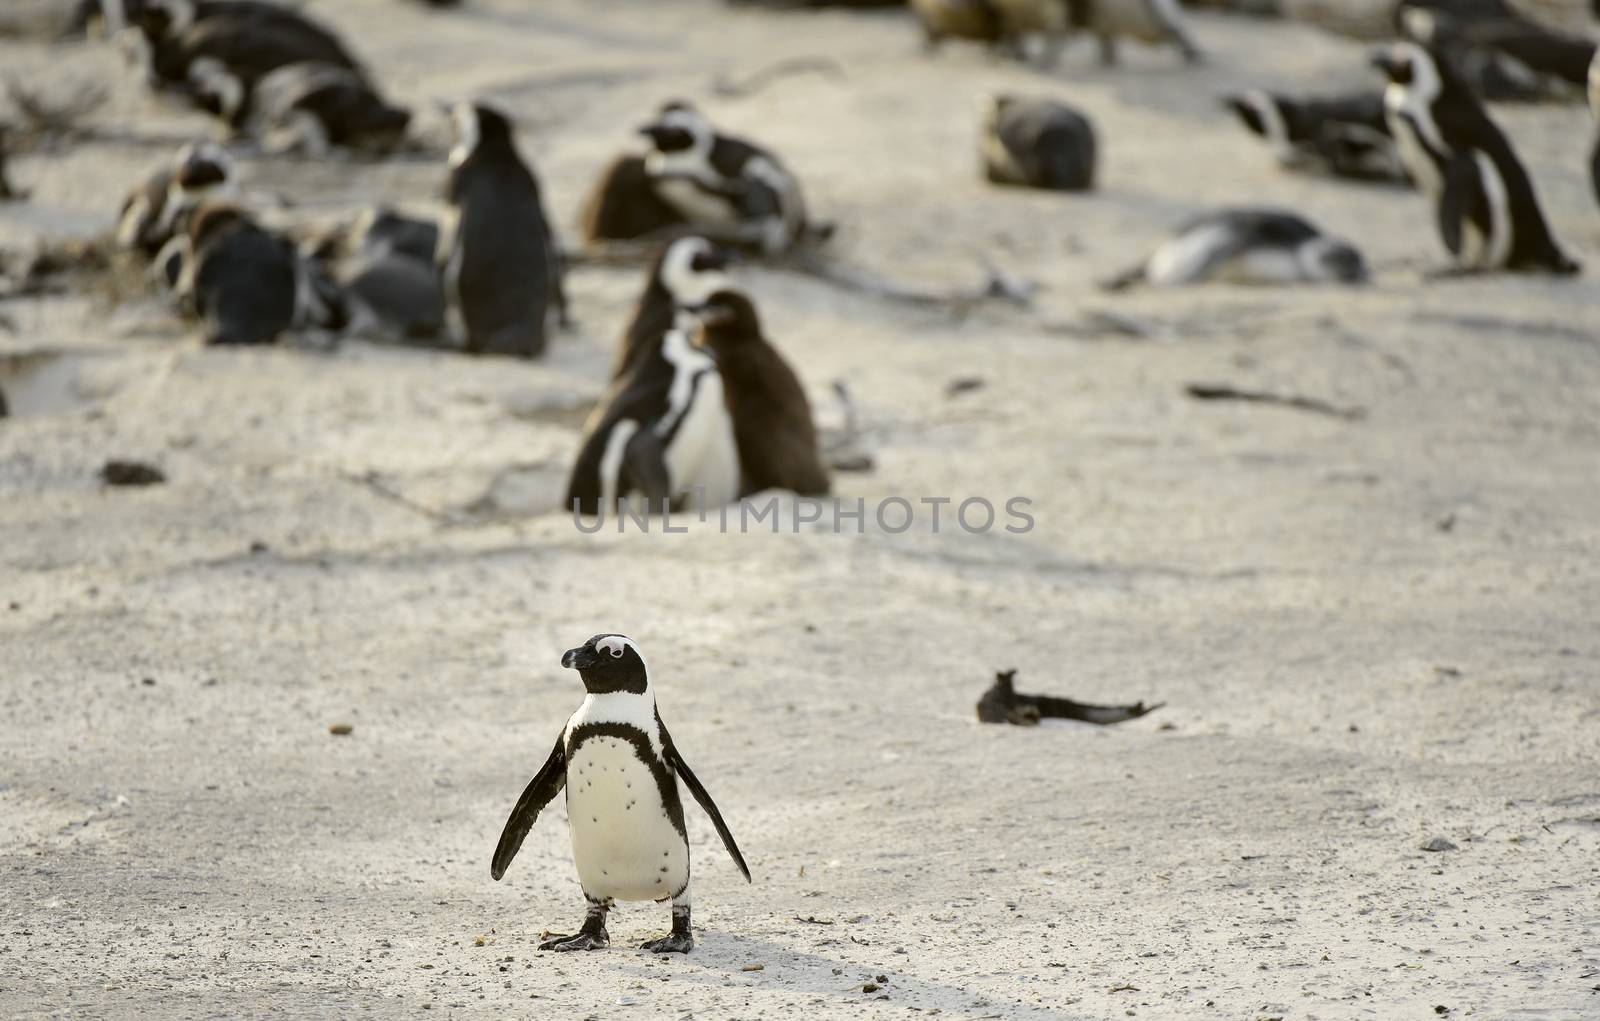  African penguin  African penguin by SURZ